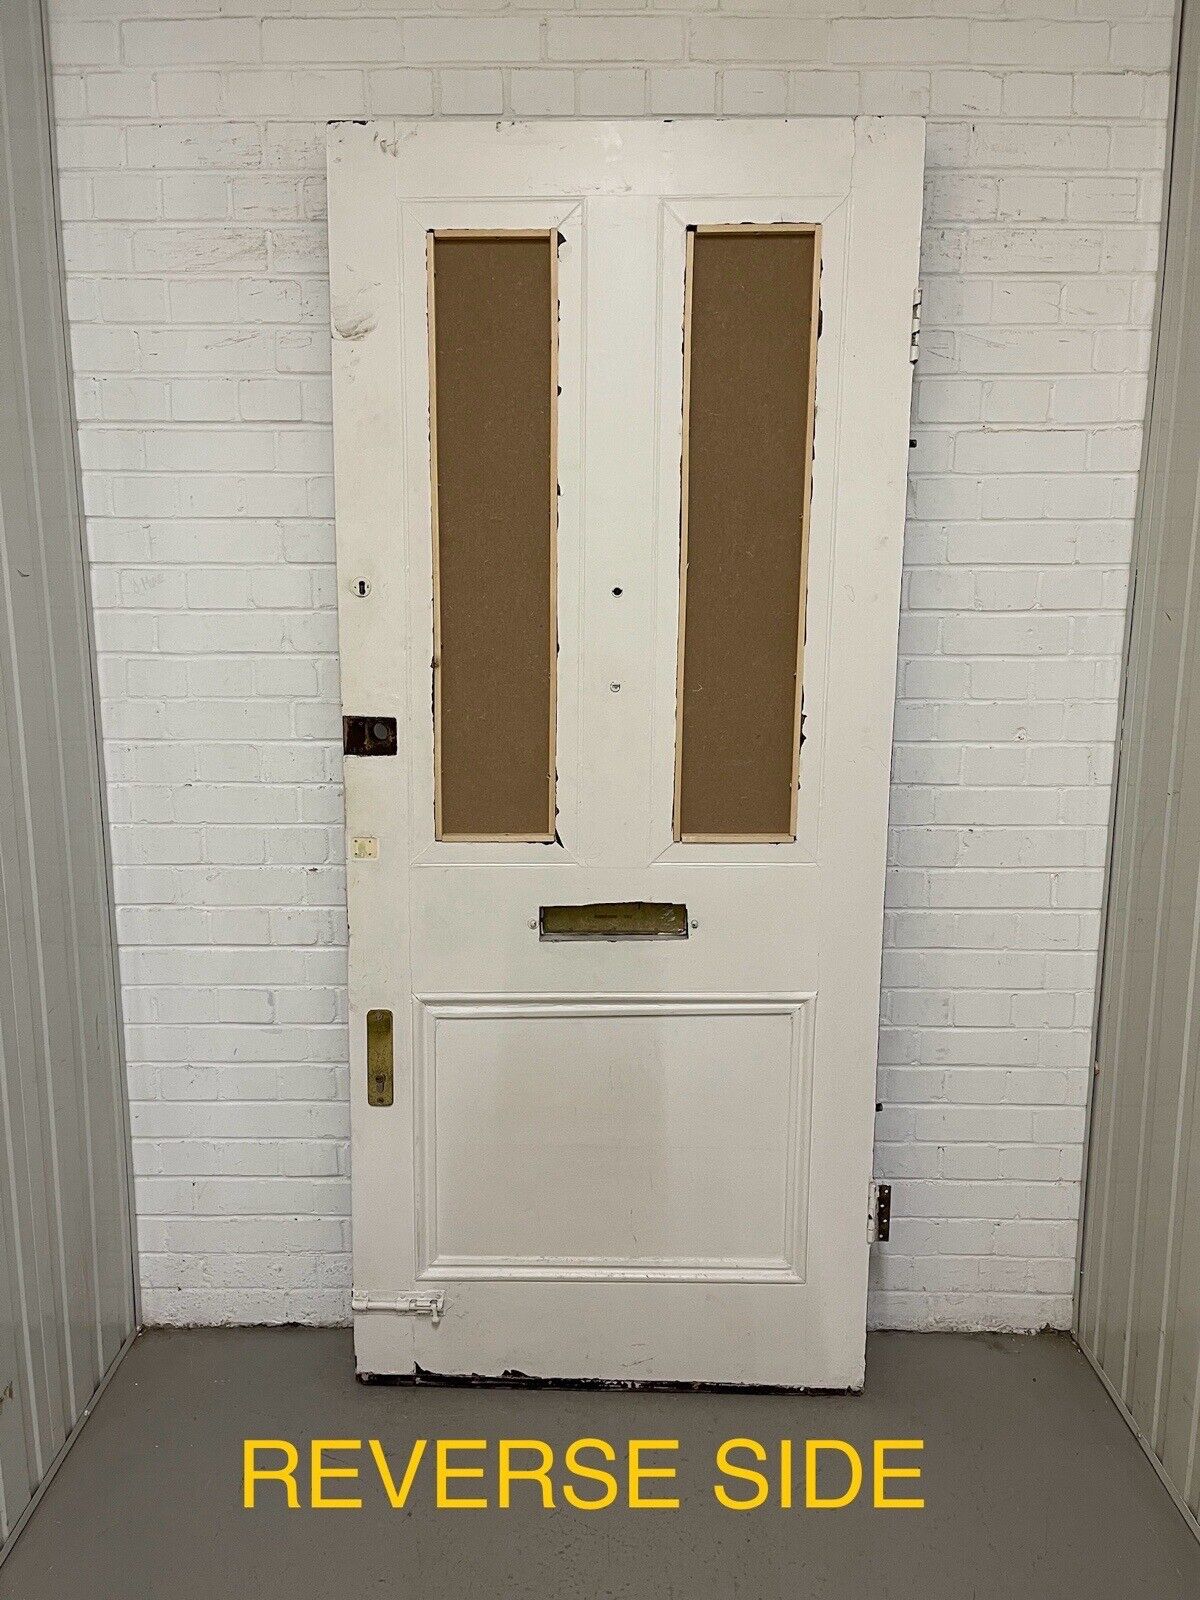 Reclaimed Victorian Edwardian Wooden Panel Front Door 2120 Or 2115 x 915mm